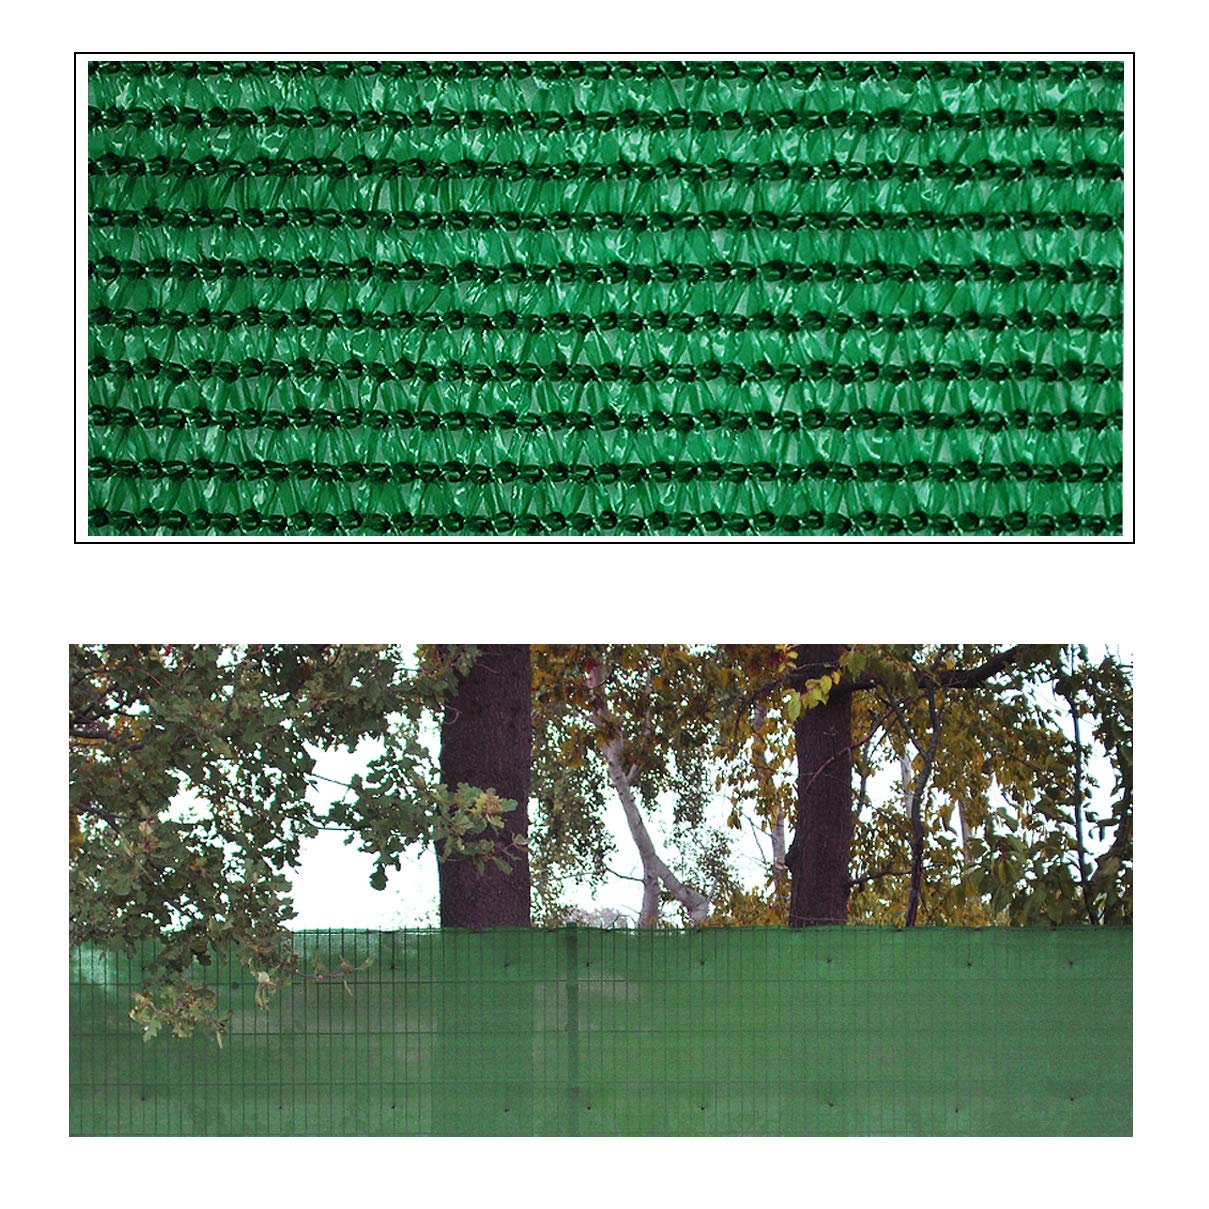 Helo 'P30' Sichtschutznetz Zaunblende 30 m Länge x 1,8 m Höhe (grün) aus HDPE Gewebe, hoch reißest, witterungs- und UV-beständig, ideal als Sichtschutz, Windschutz, Staubschutz oder Sonnenschutz Netz